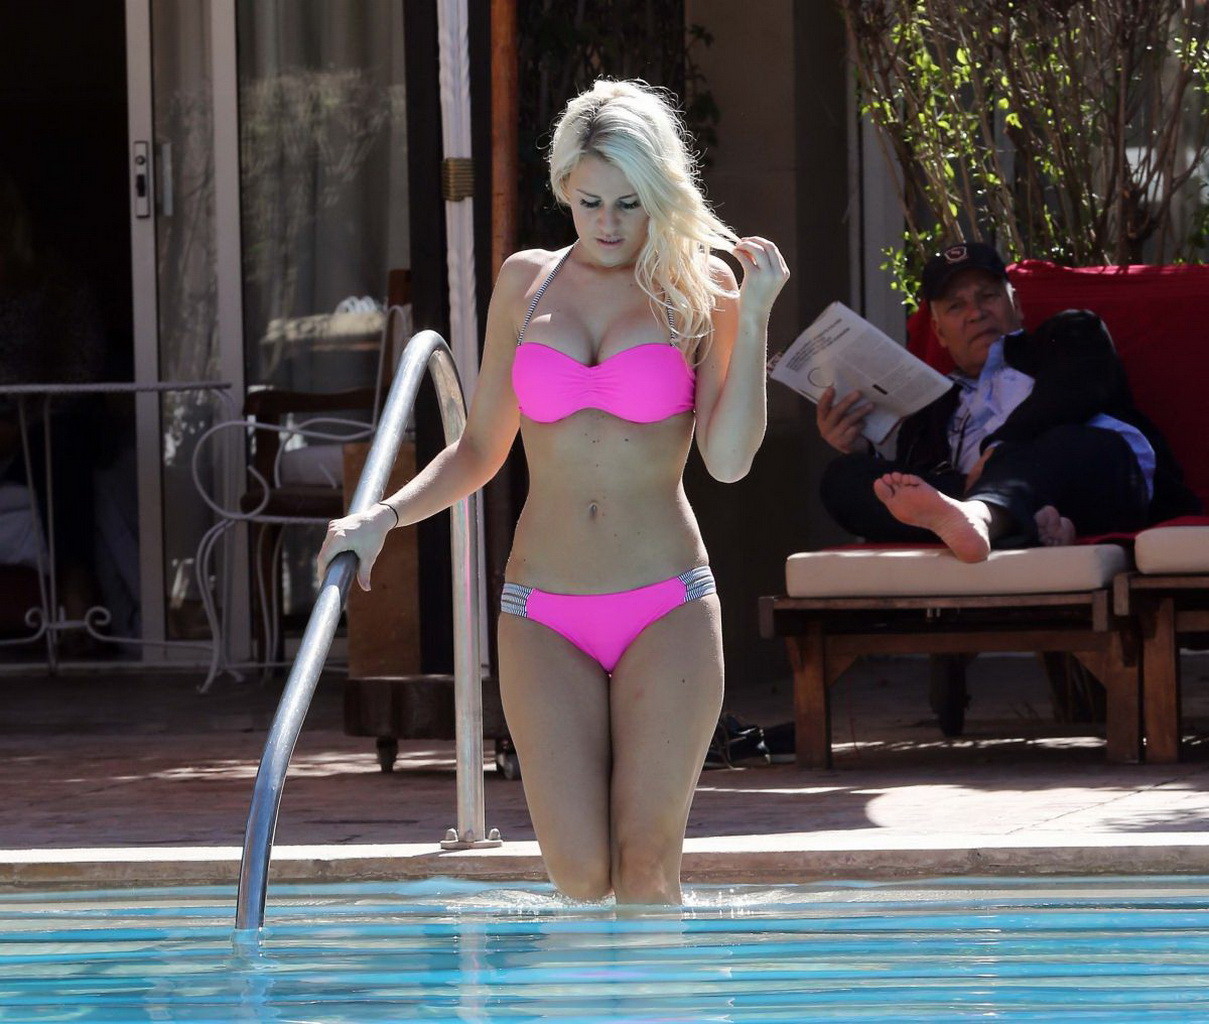 Danielle armstrong mostrando su cuerpo curvilíneo en un diminuto bikini rosa
 #75198588